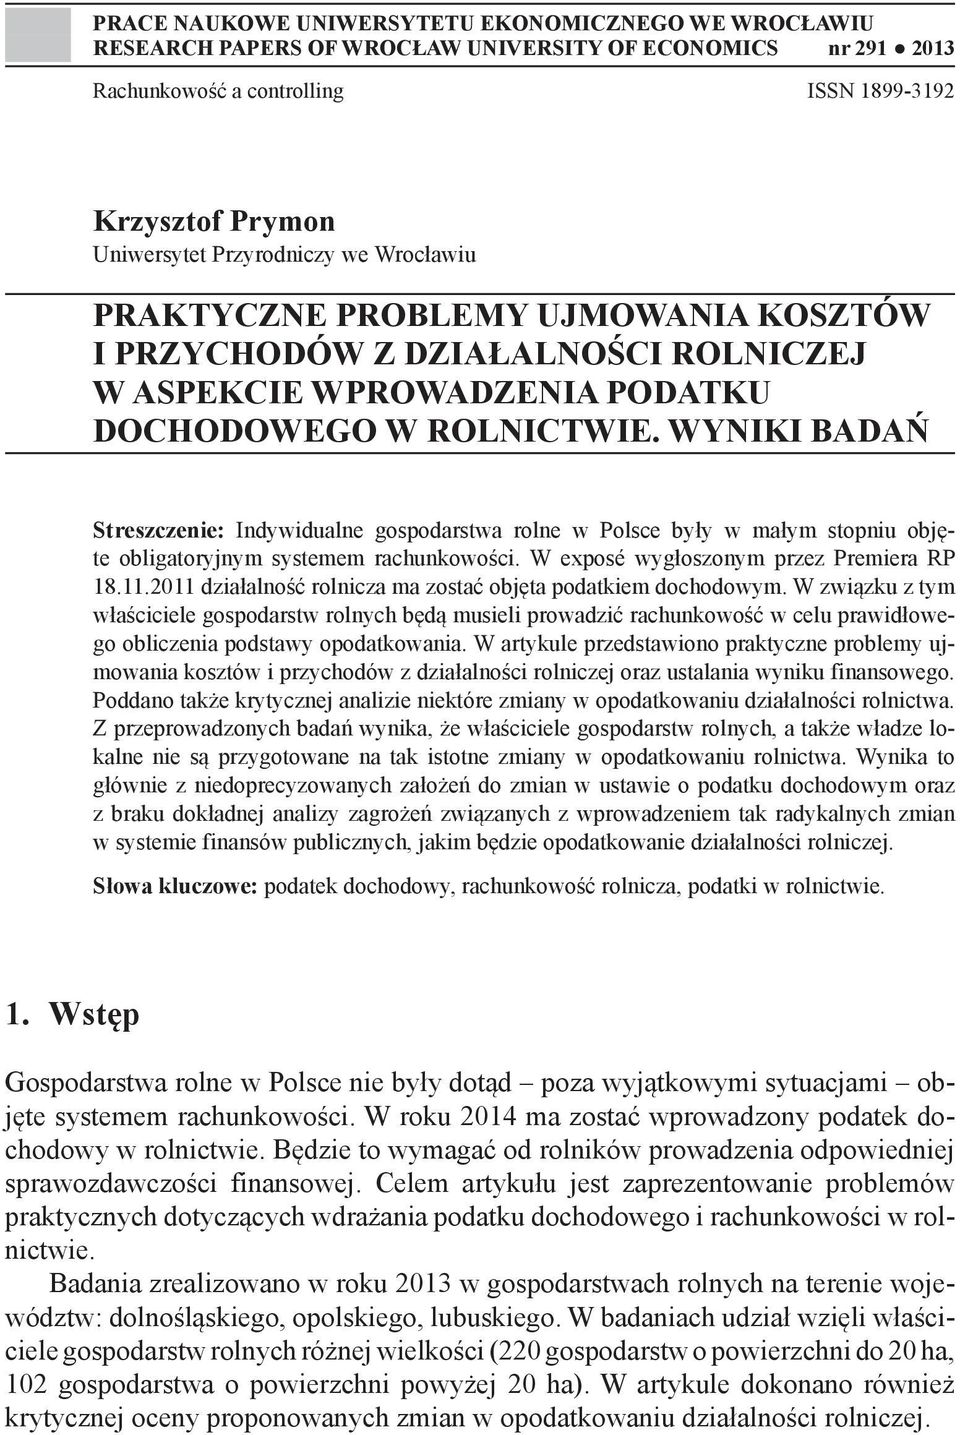 WYNIKI BADAŃ Streszczenie: Indywidualne gospodarstwa rolne w Polsce były w małym stopniu objęte obligatoryjnym systemem rachunkowości. W exposé wygłoszonym przez Premiera RP 18.11.